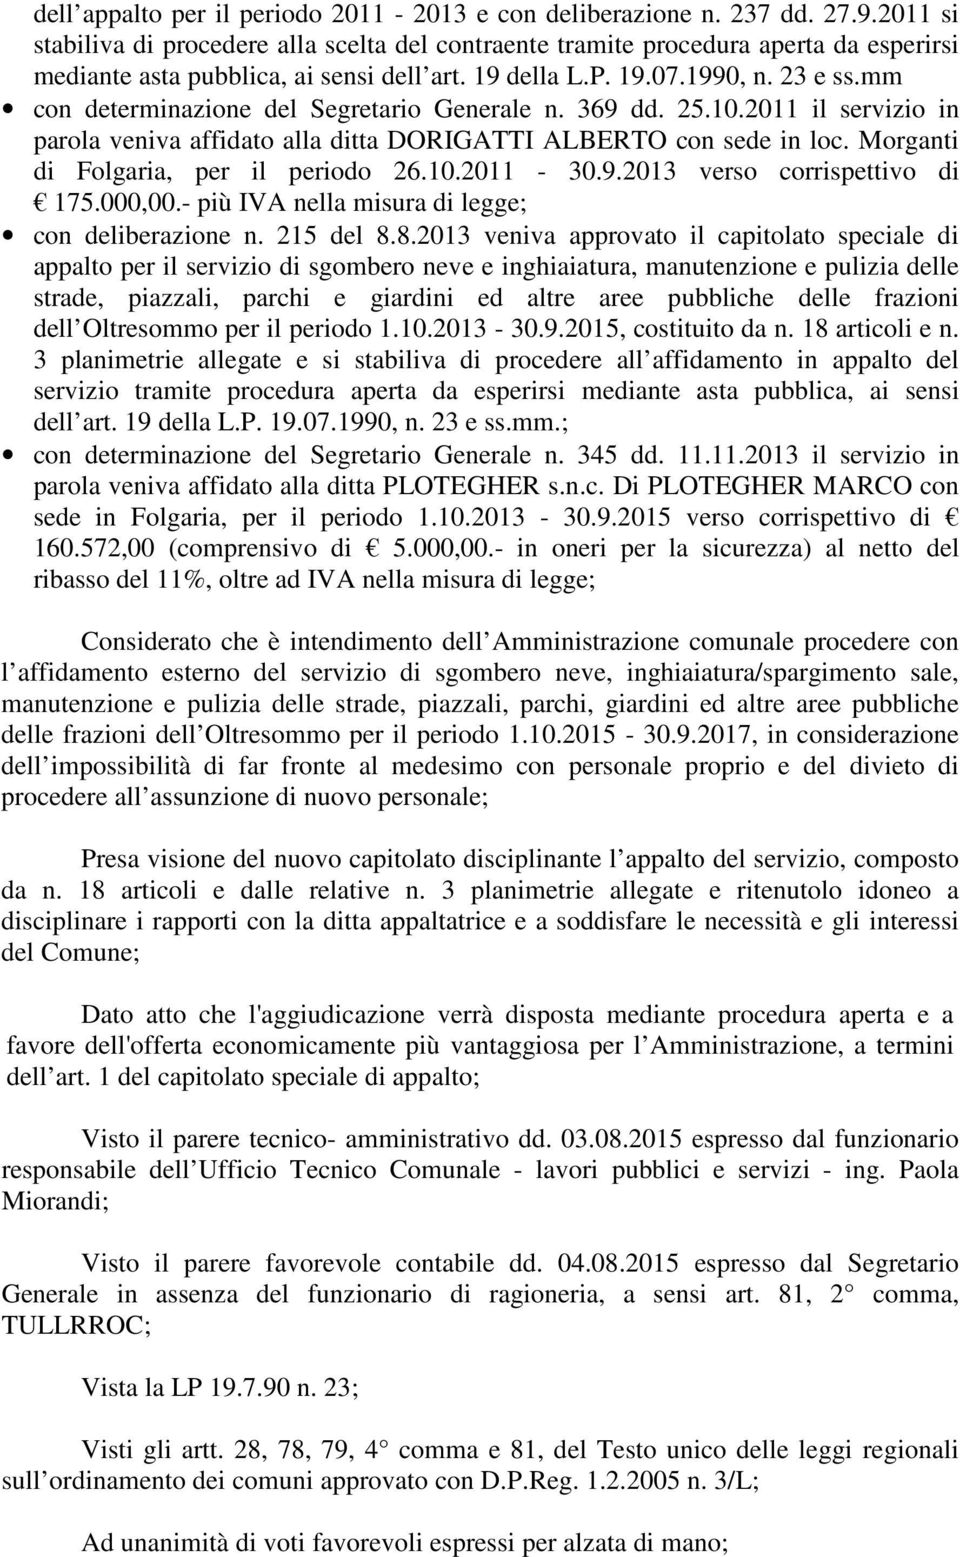 mm con determinazione del Segretario Generale n. 369 dd. 25.10.2011 il servizio in parola veniva affidato alla ditta DORIGATTI ALBERTO con sede in loc. Morganti di Folgaria, per il periodo 26.10.2011-30.